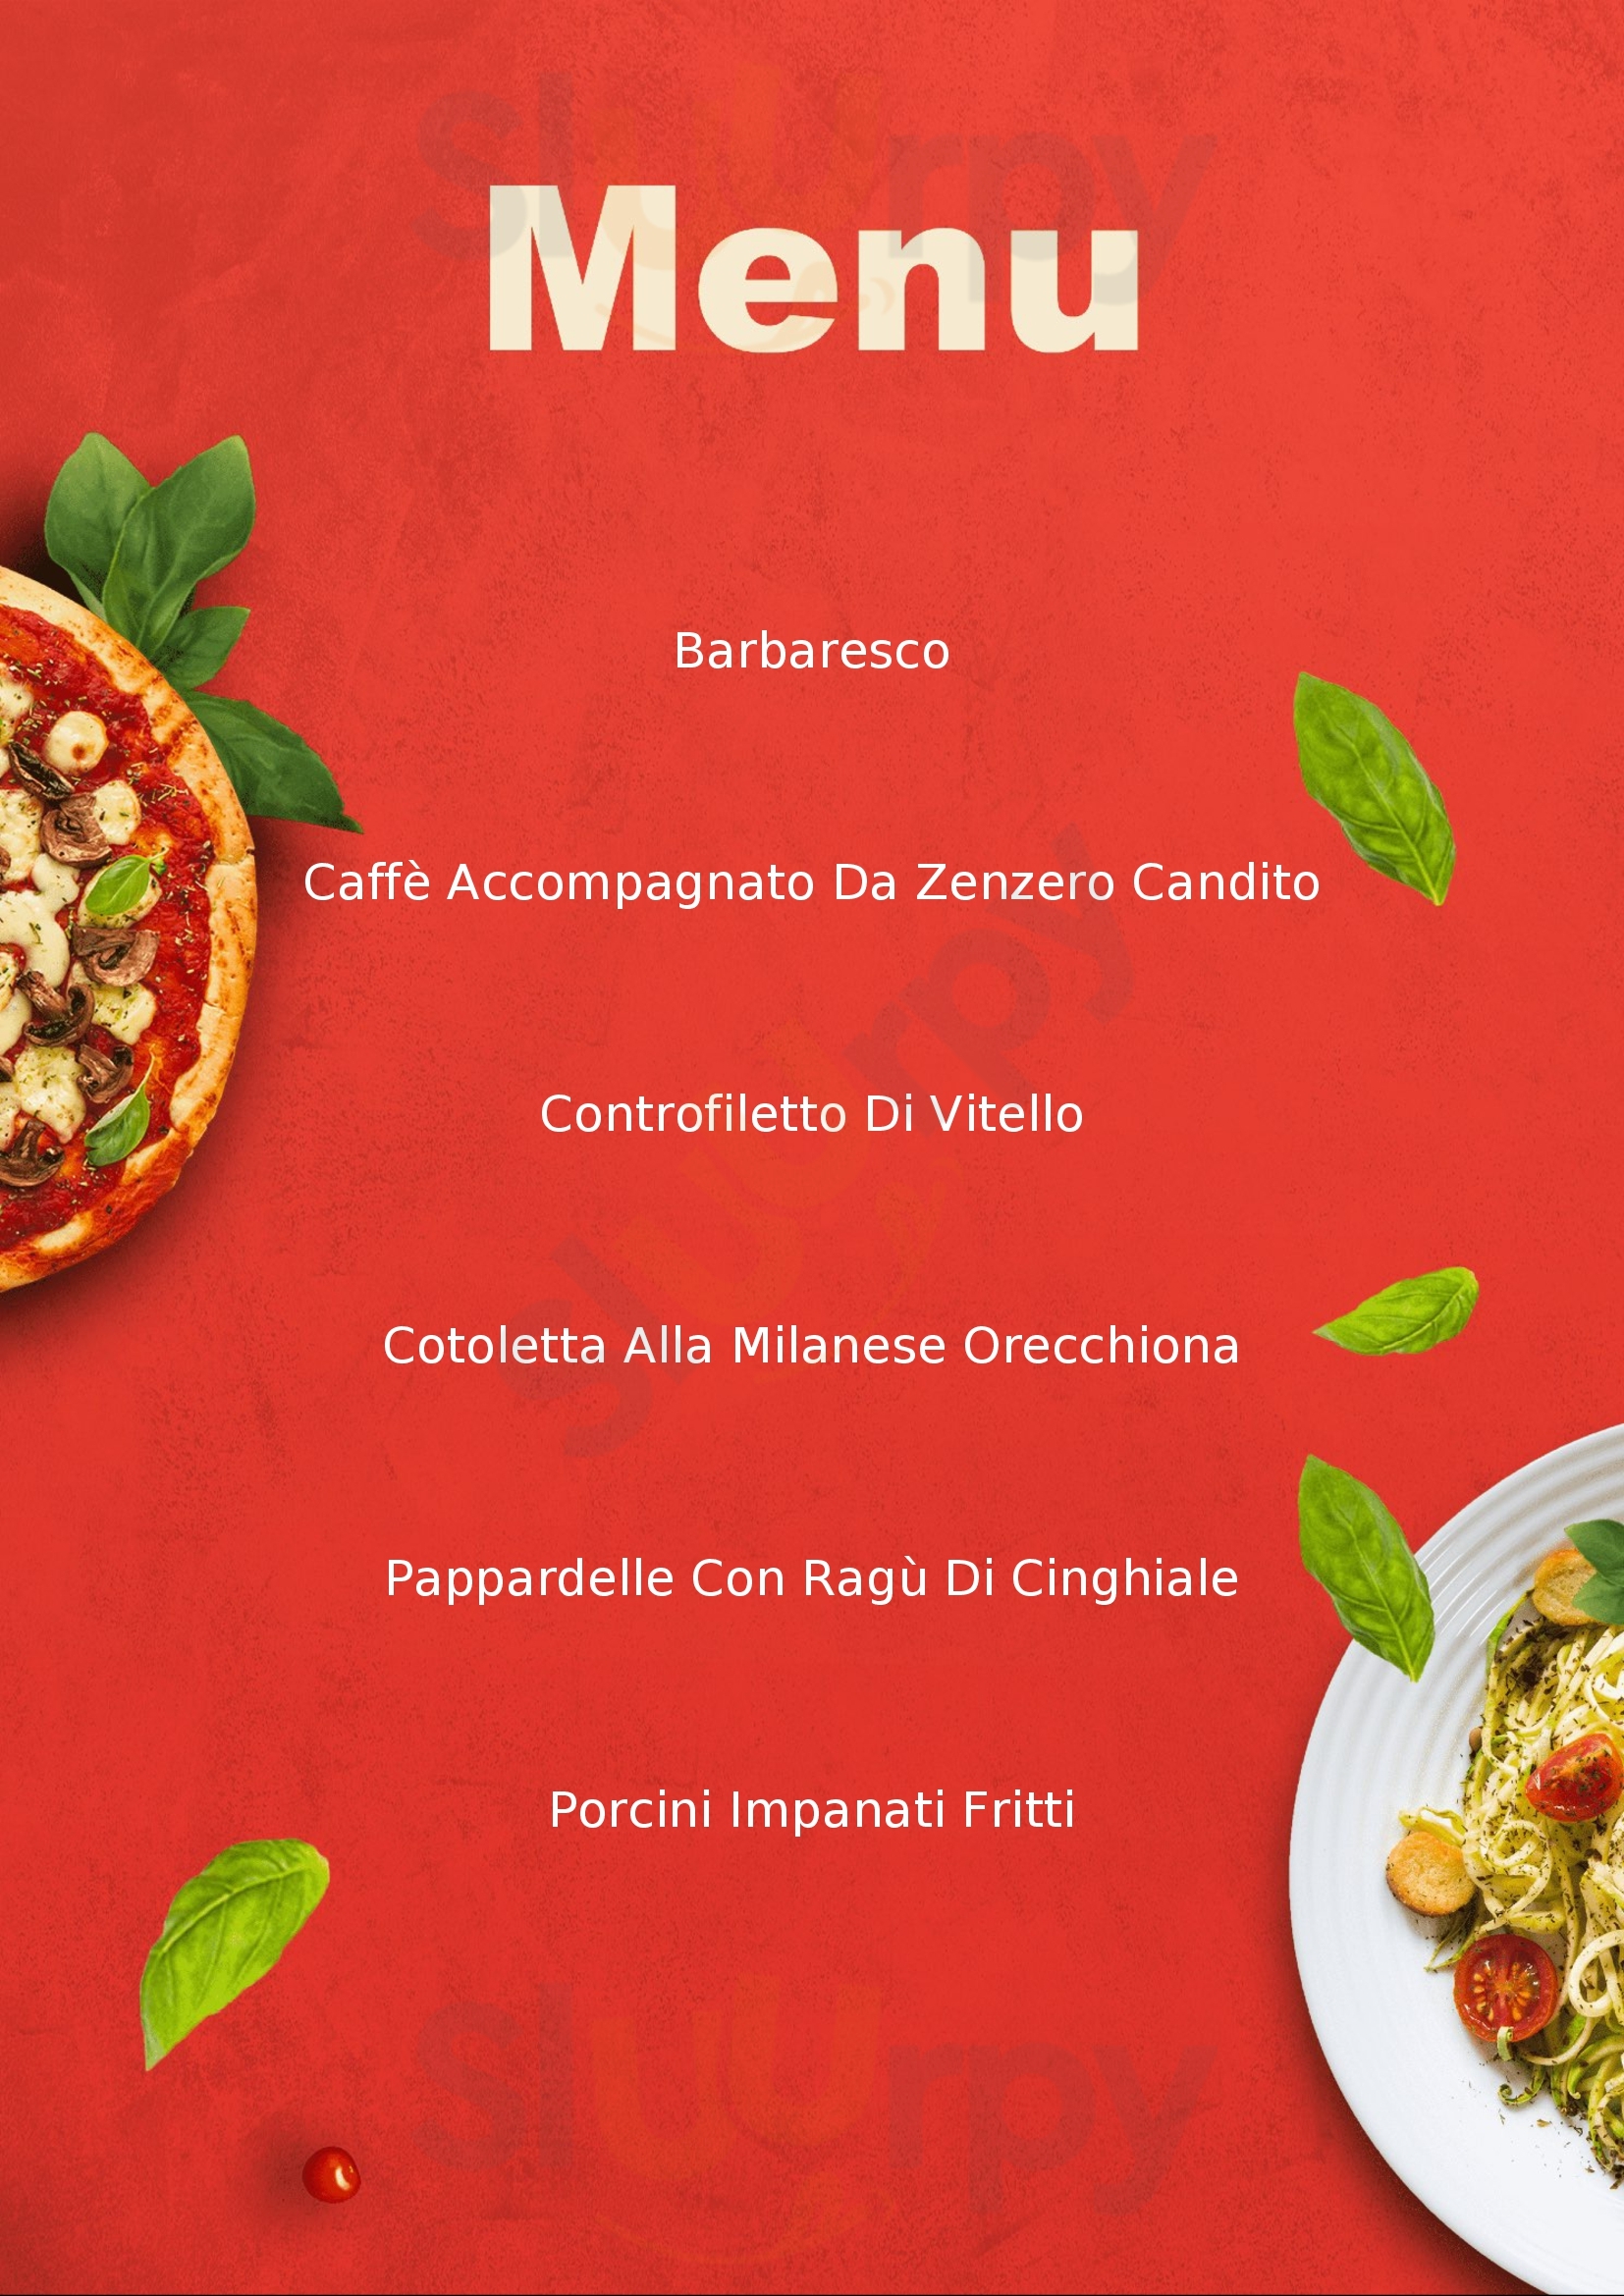 Degusteria Forlino Tortona menù 1 pagina